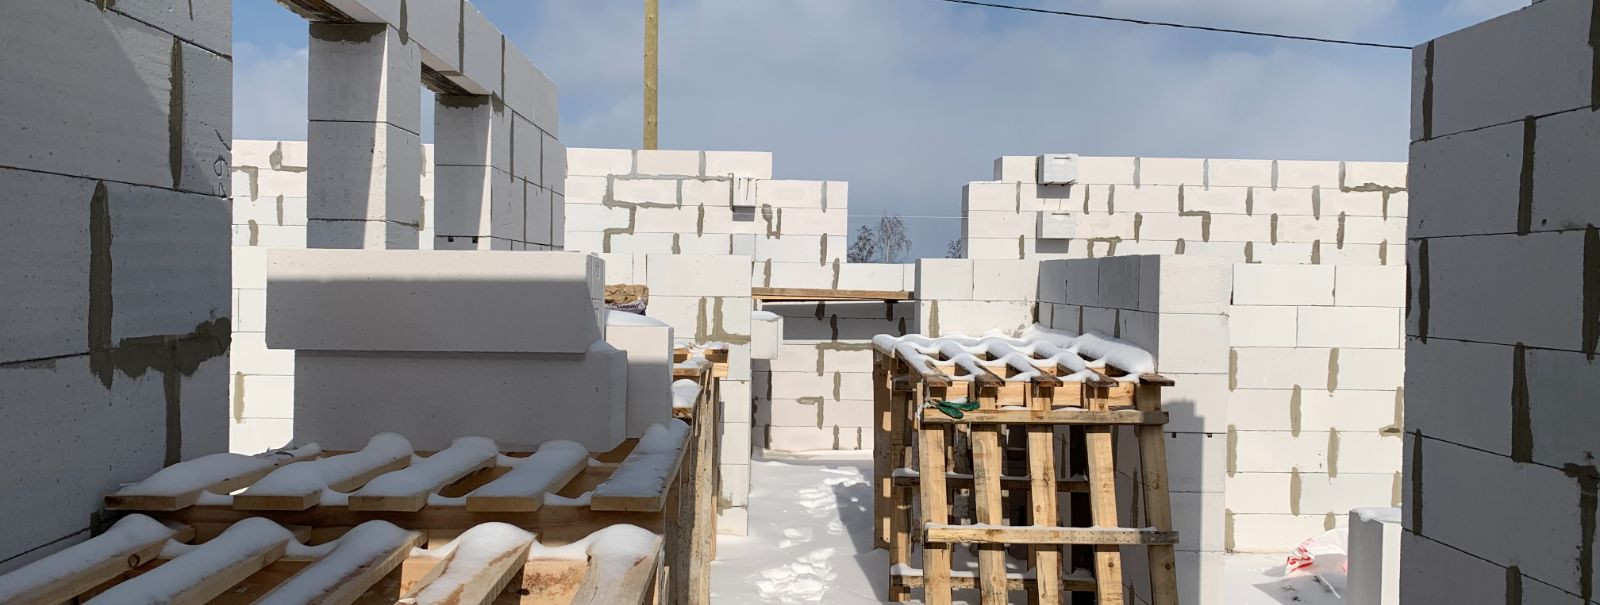 Talvine betoneerimine võib olla väljakutseks, eriti kui ehitusprojekt nõuab kiiret valmimist. Külma ja madala õhuniiskuse tingimused võivad mõjutada betooni tug